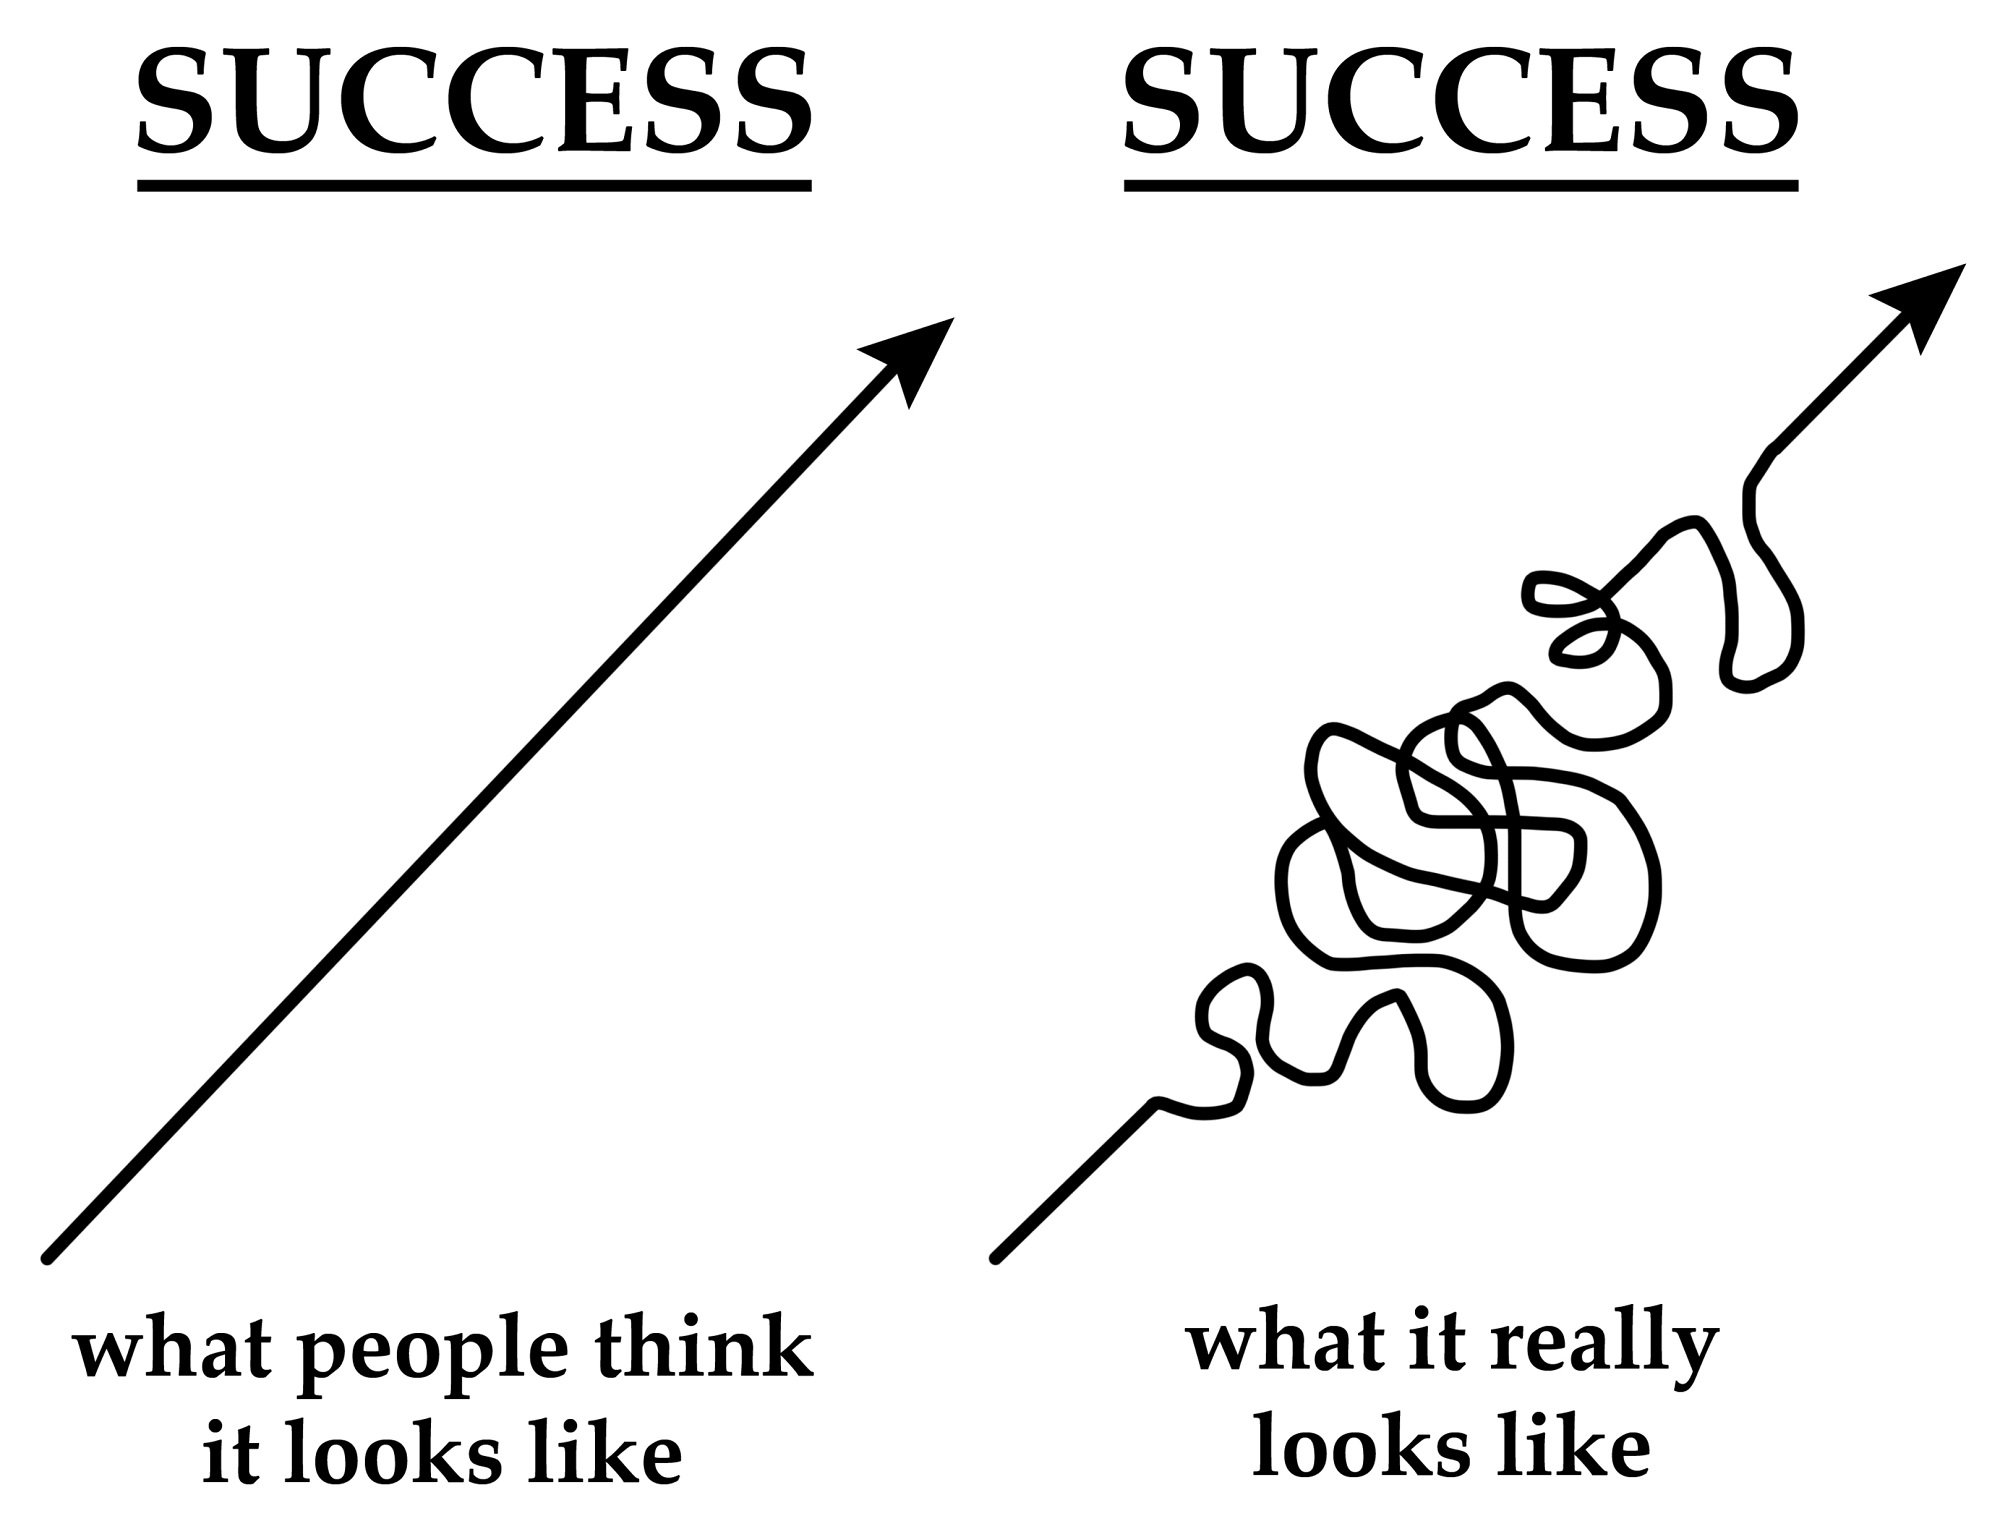 De weg naar succes